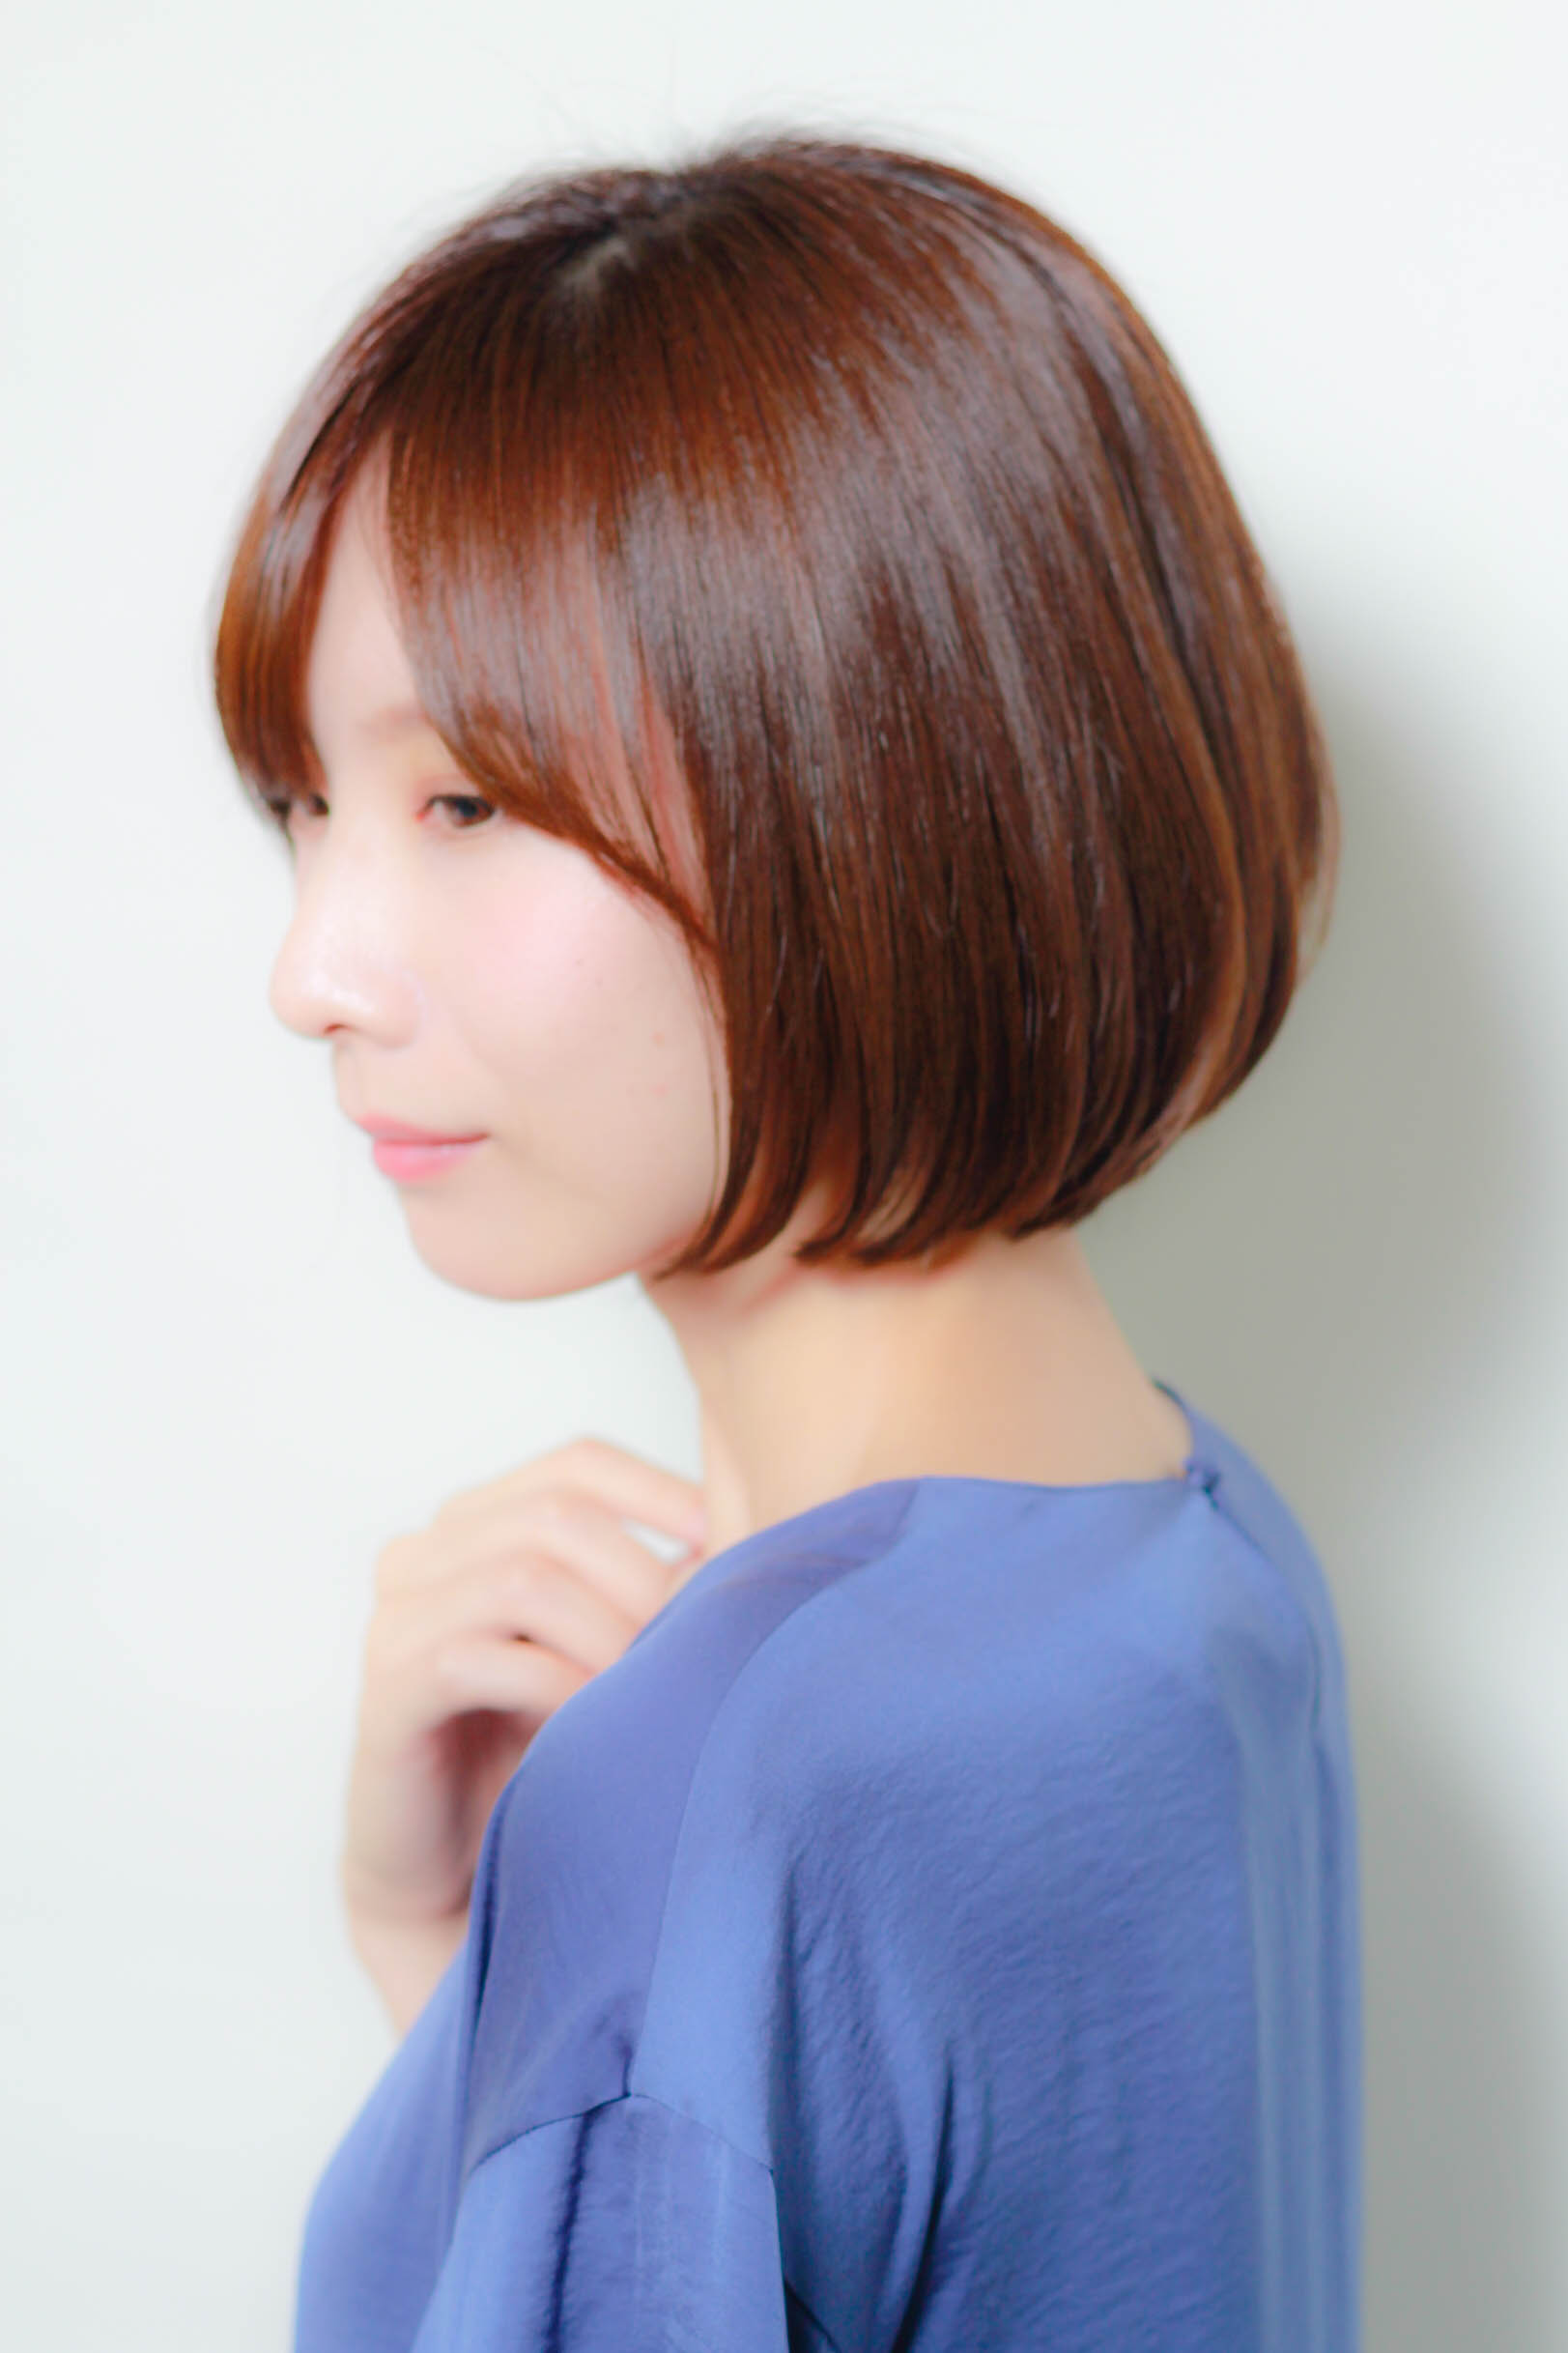 22年夏 ギリギリ結べる長さのボブで人気の髪型選 似合わせカットが上手い東京の美容師 美容室minx銀座 蛭田のブログ